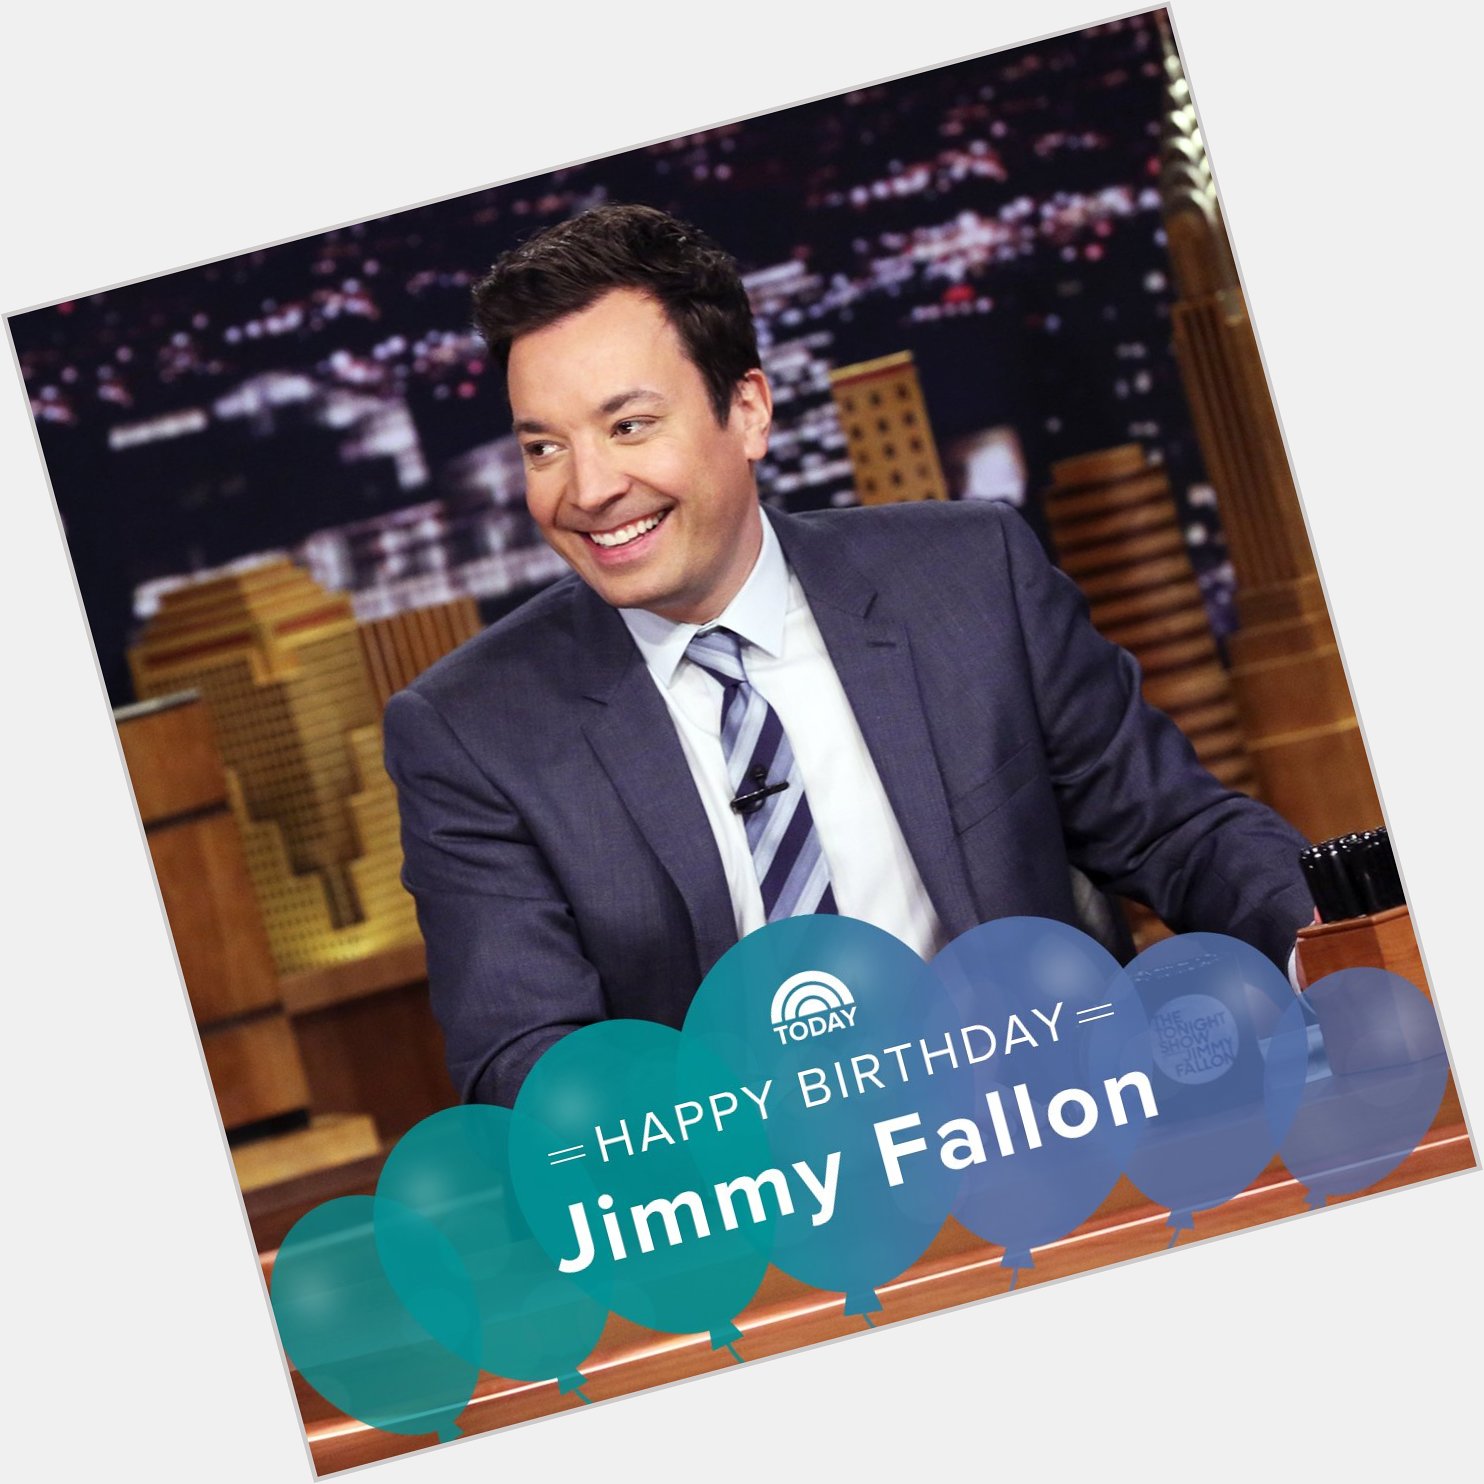 Happy birthday, Jimmy Fallon!   